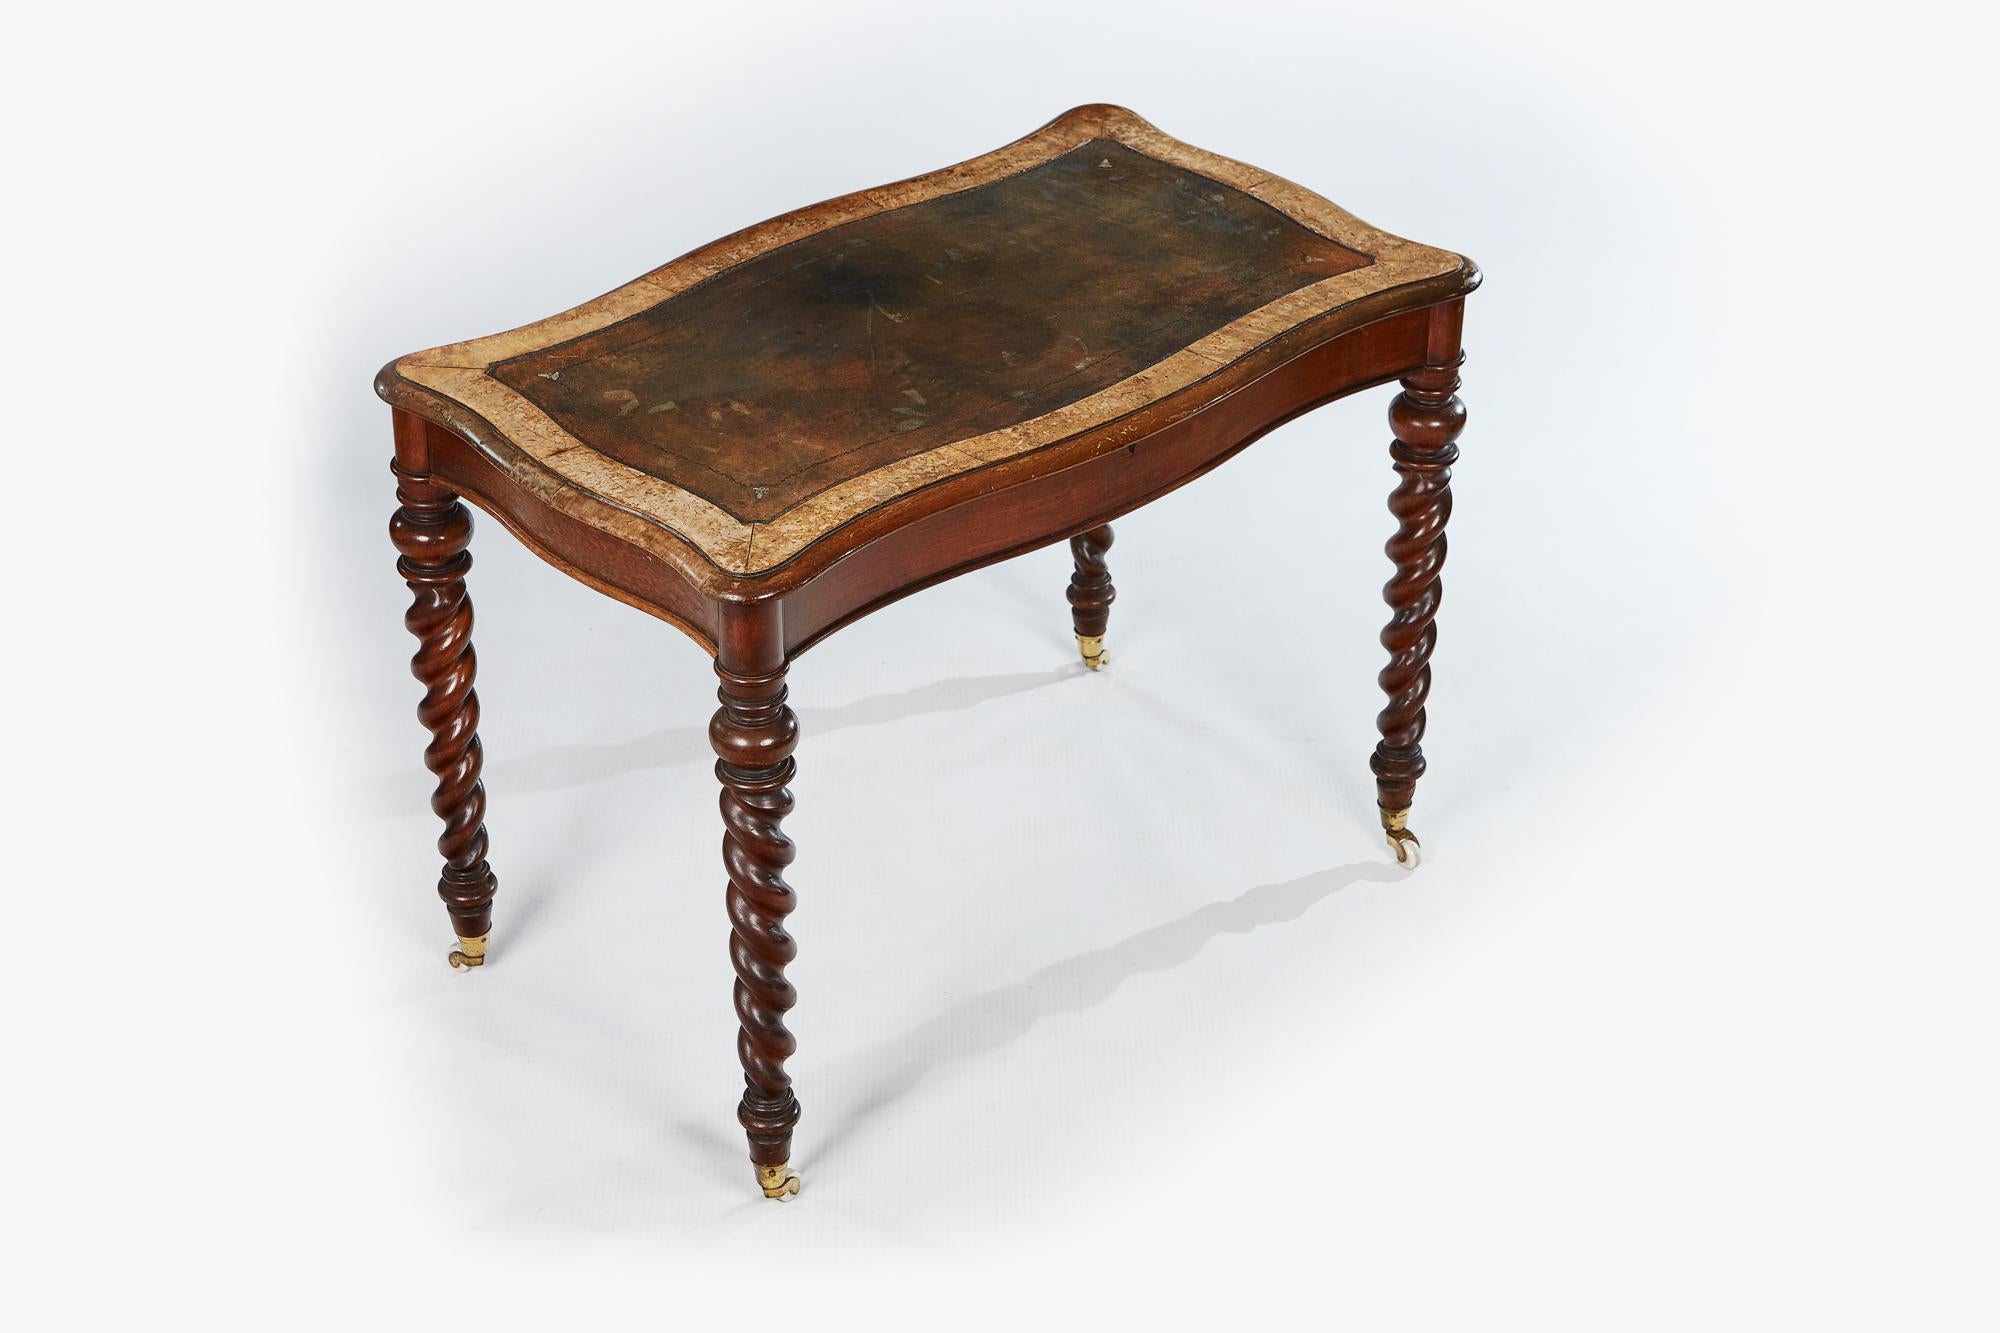 Table d'écriture Miles and Edwards du 19ème siècle, avec un plateau de forme inhabituelle, avec un scribe en cuir sur un pied en torsion d'orge.